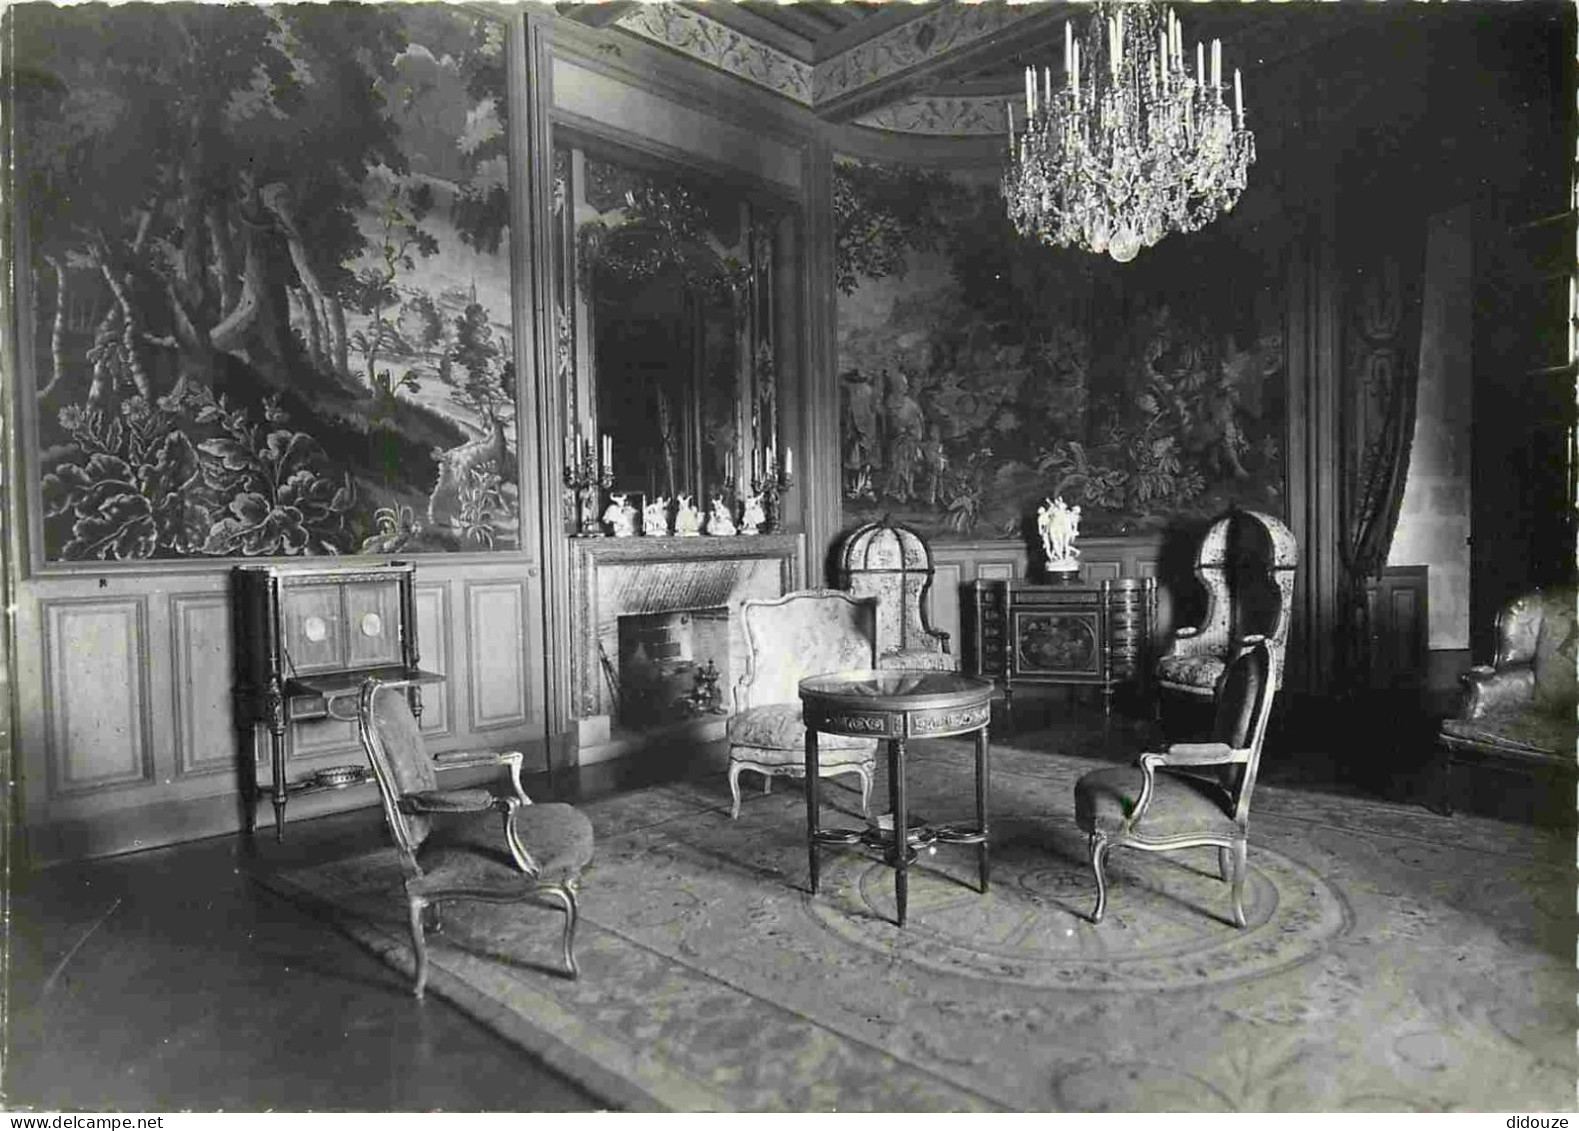 26 - Grignan - Intérieur Du Château - Salon De La Reine - Mention Photographie Véritable - Carte Dentelée - CPSM Grand F - Grignan